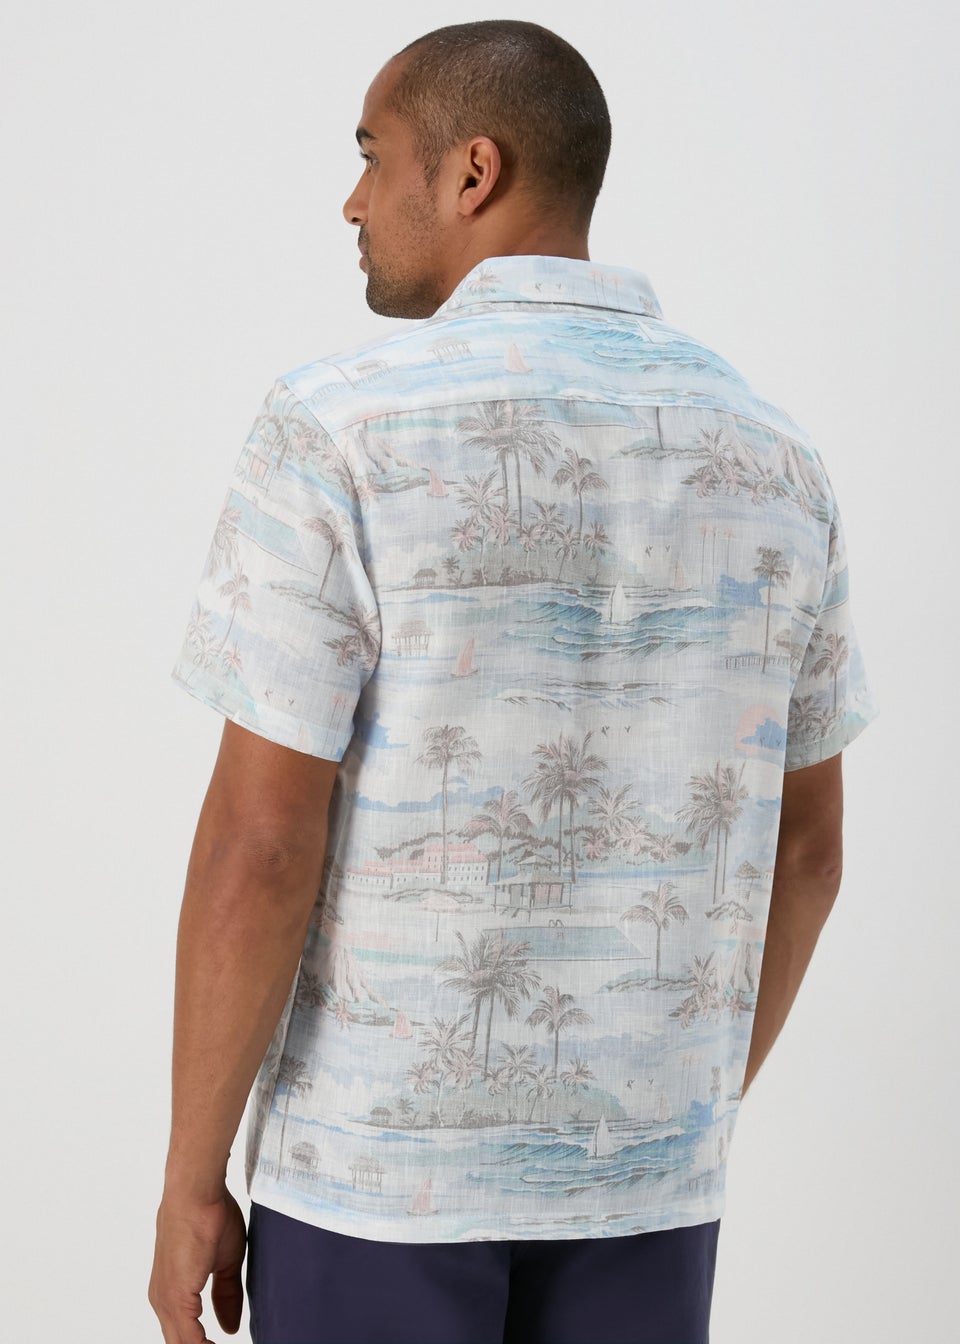 Lincoln Multicolour Island Print Shirt